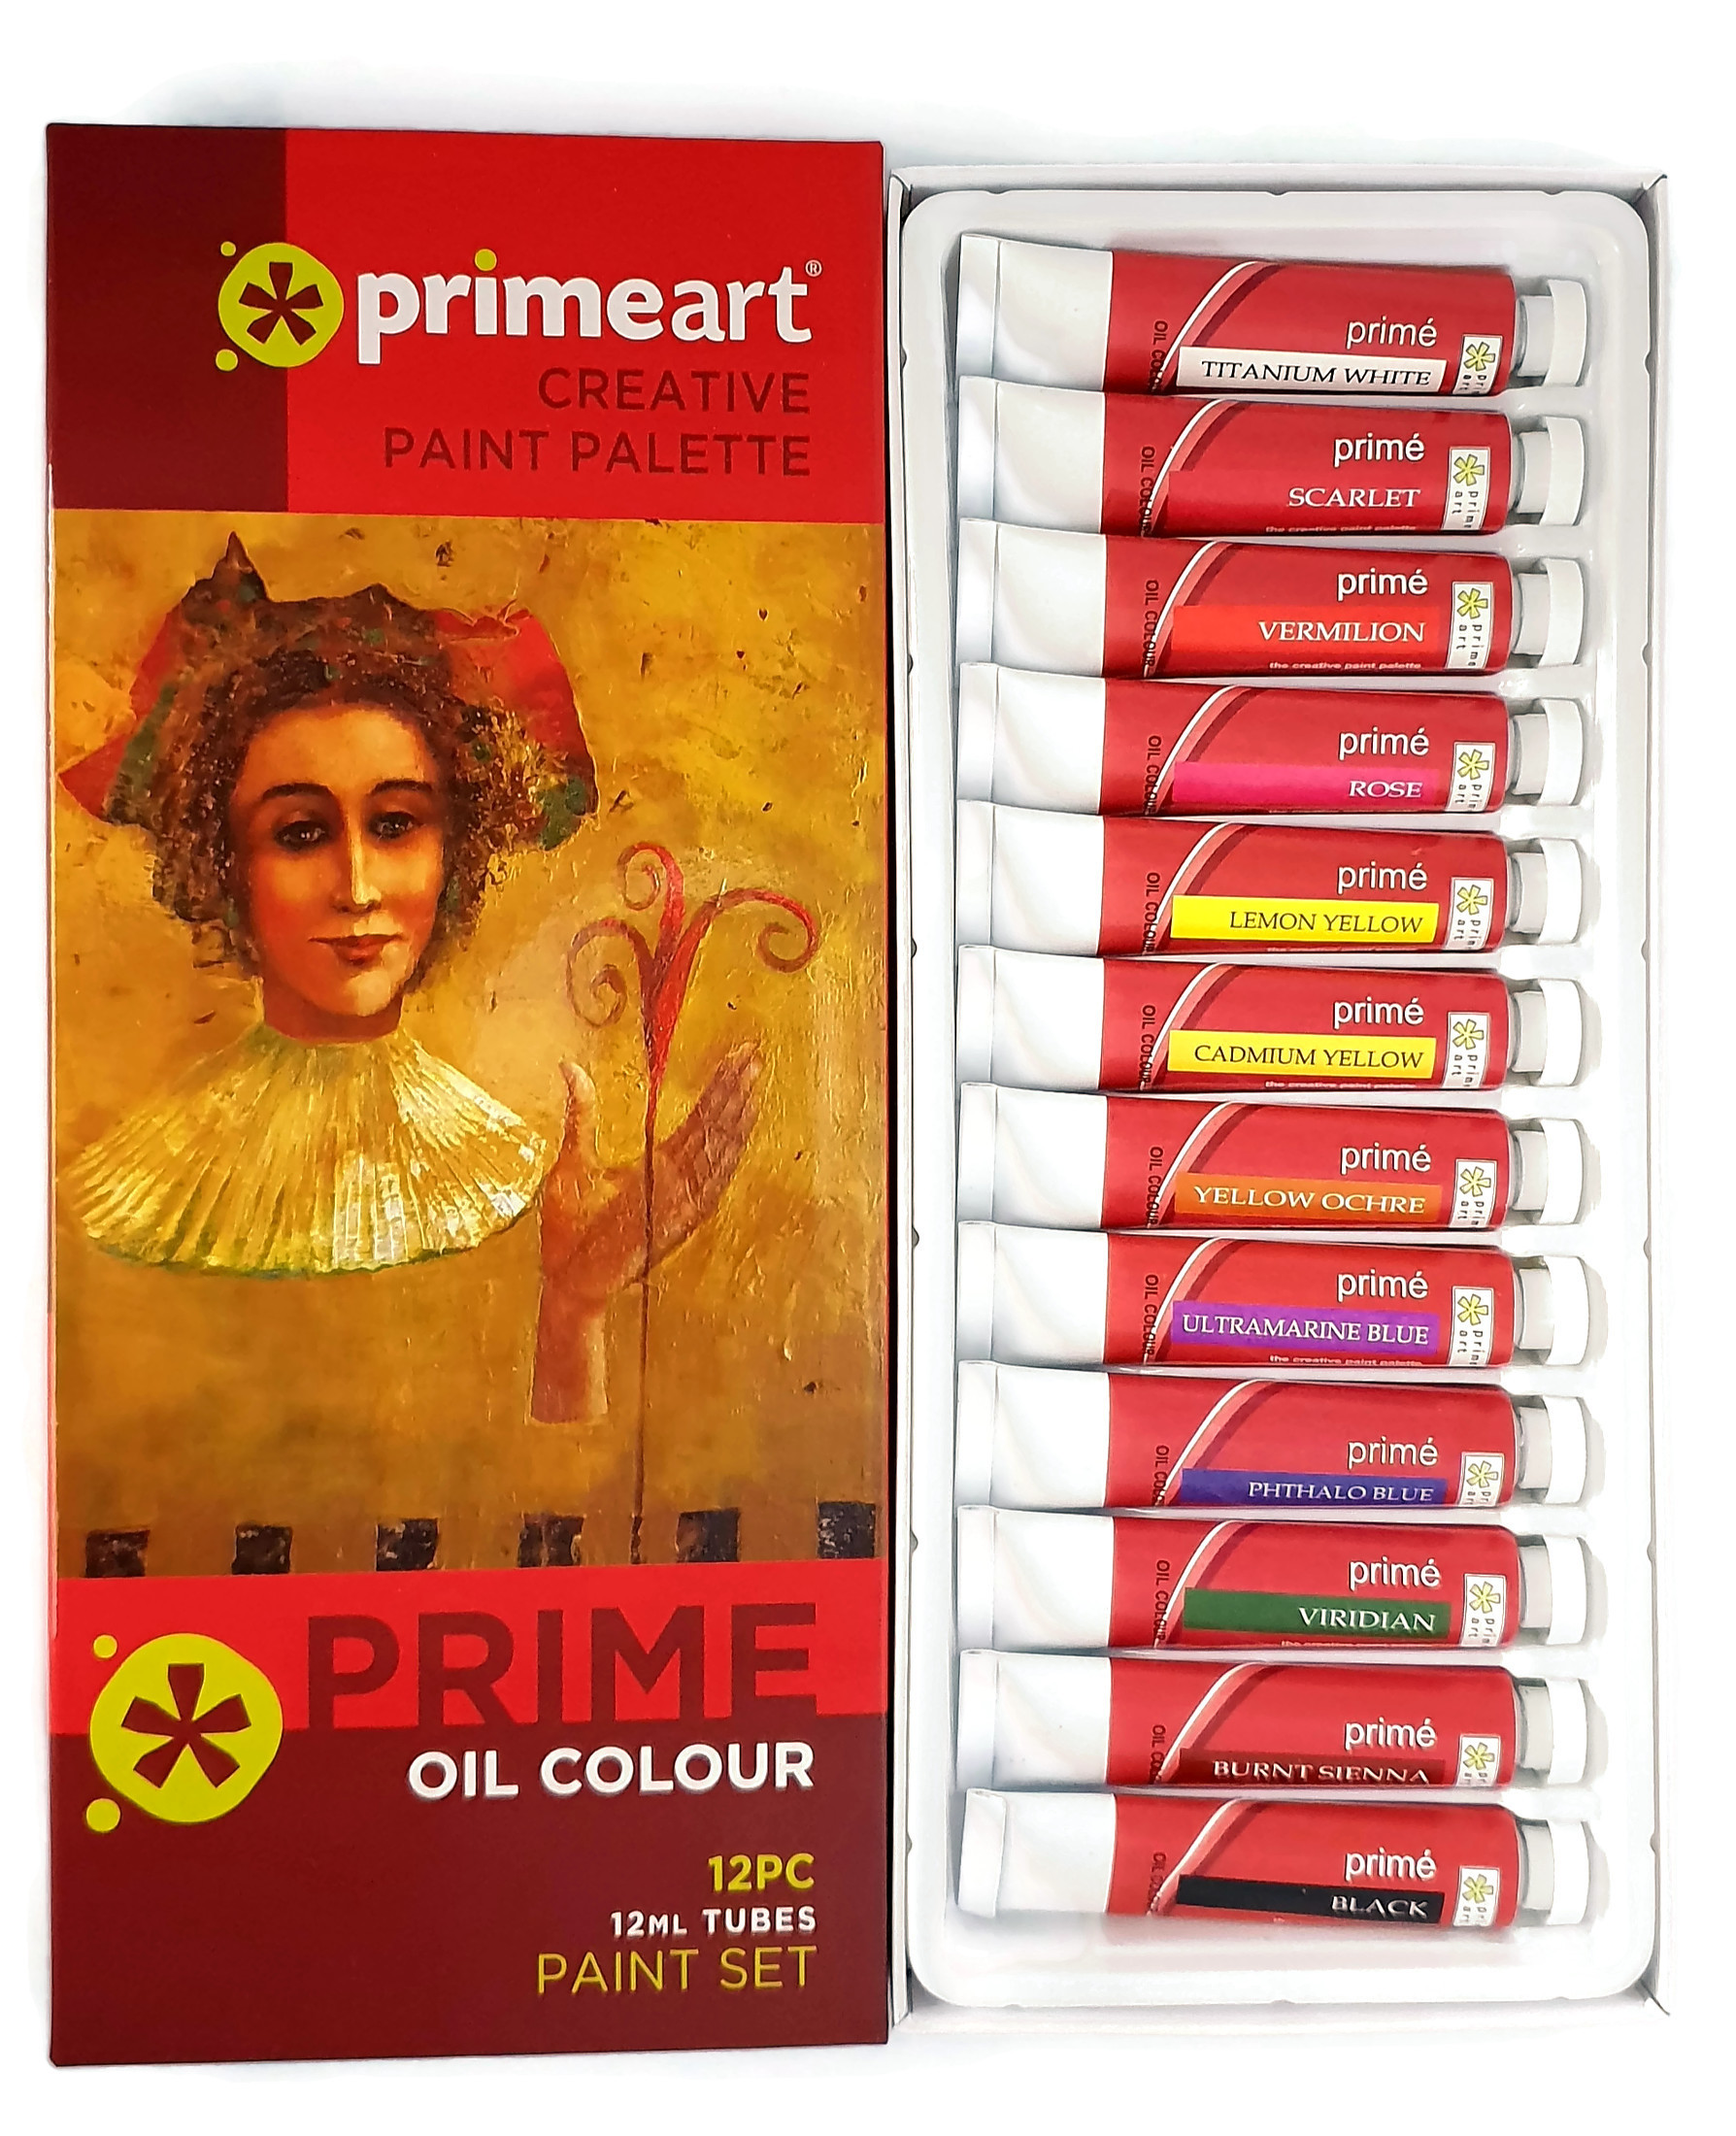 Prime Art oil paint set of 12